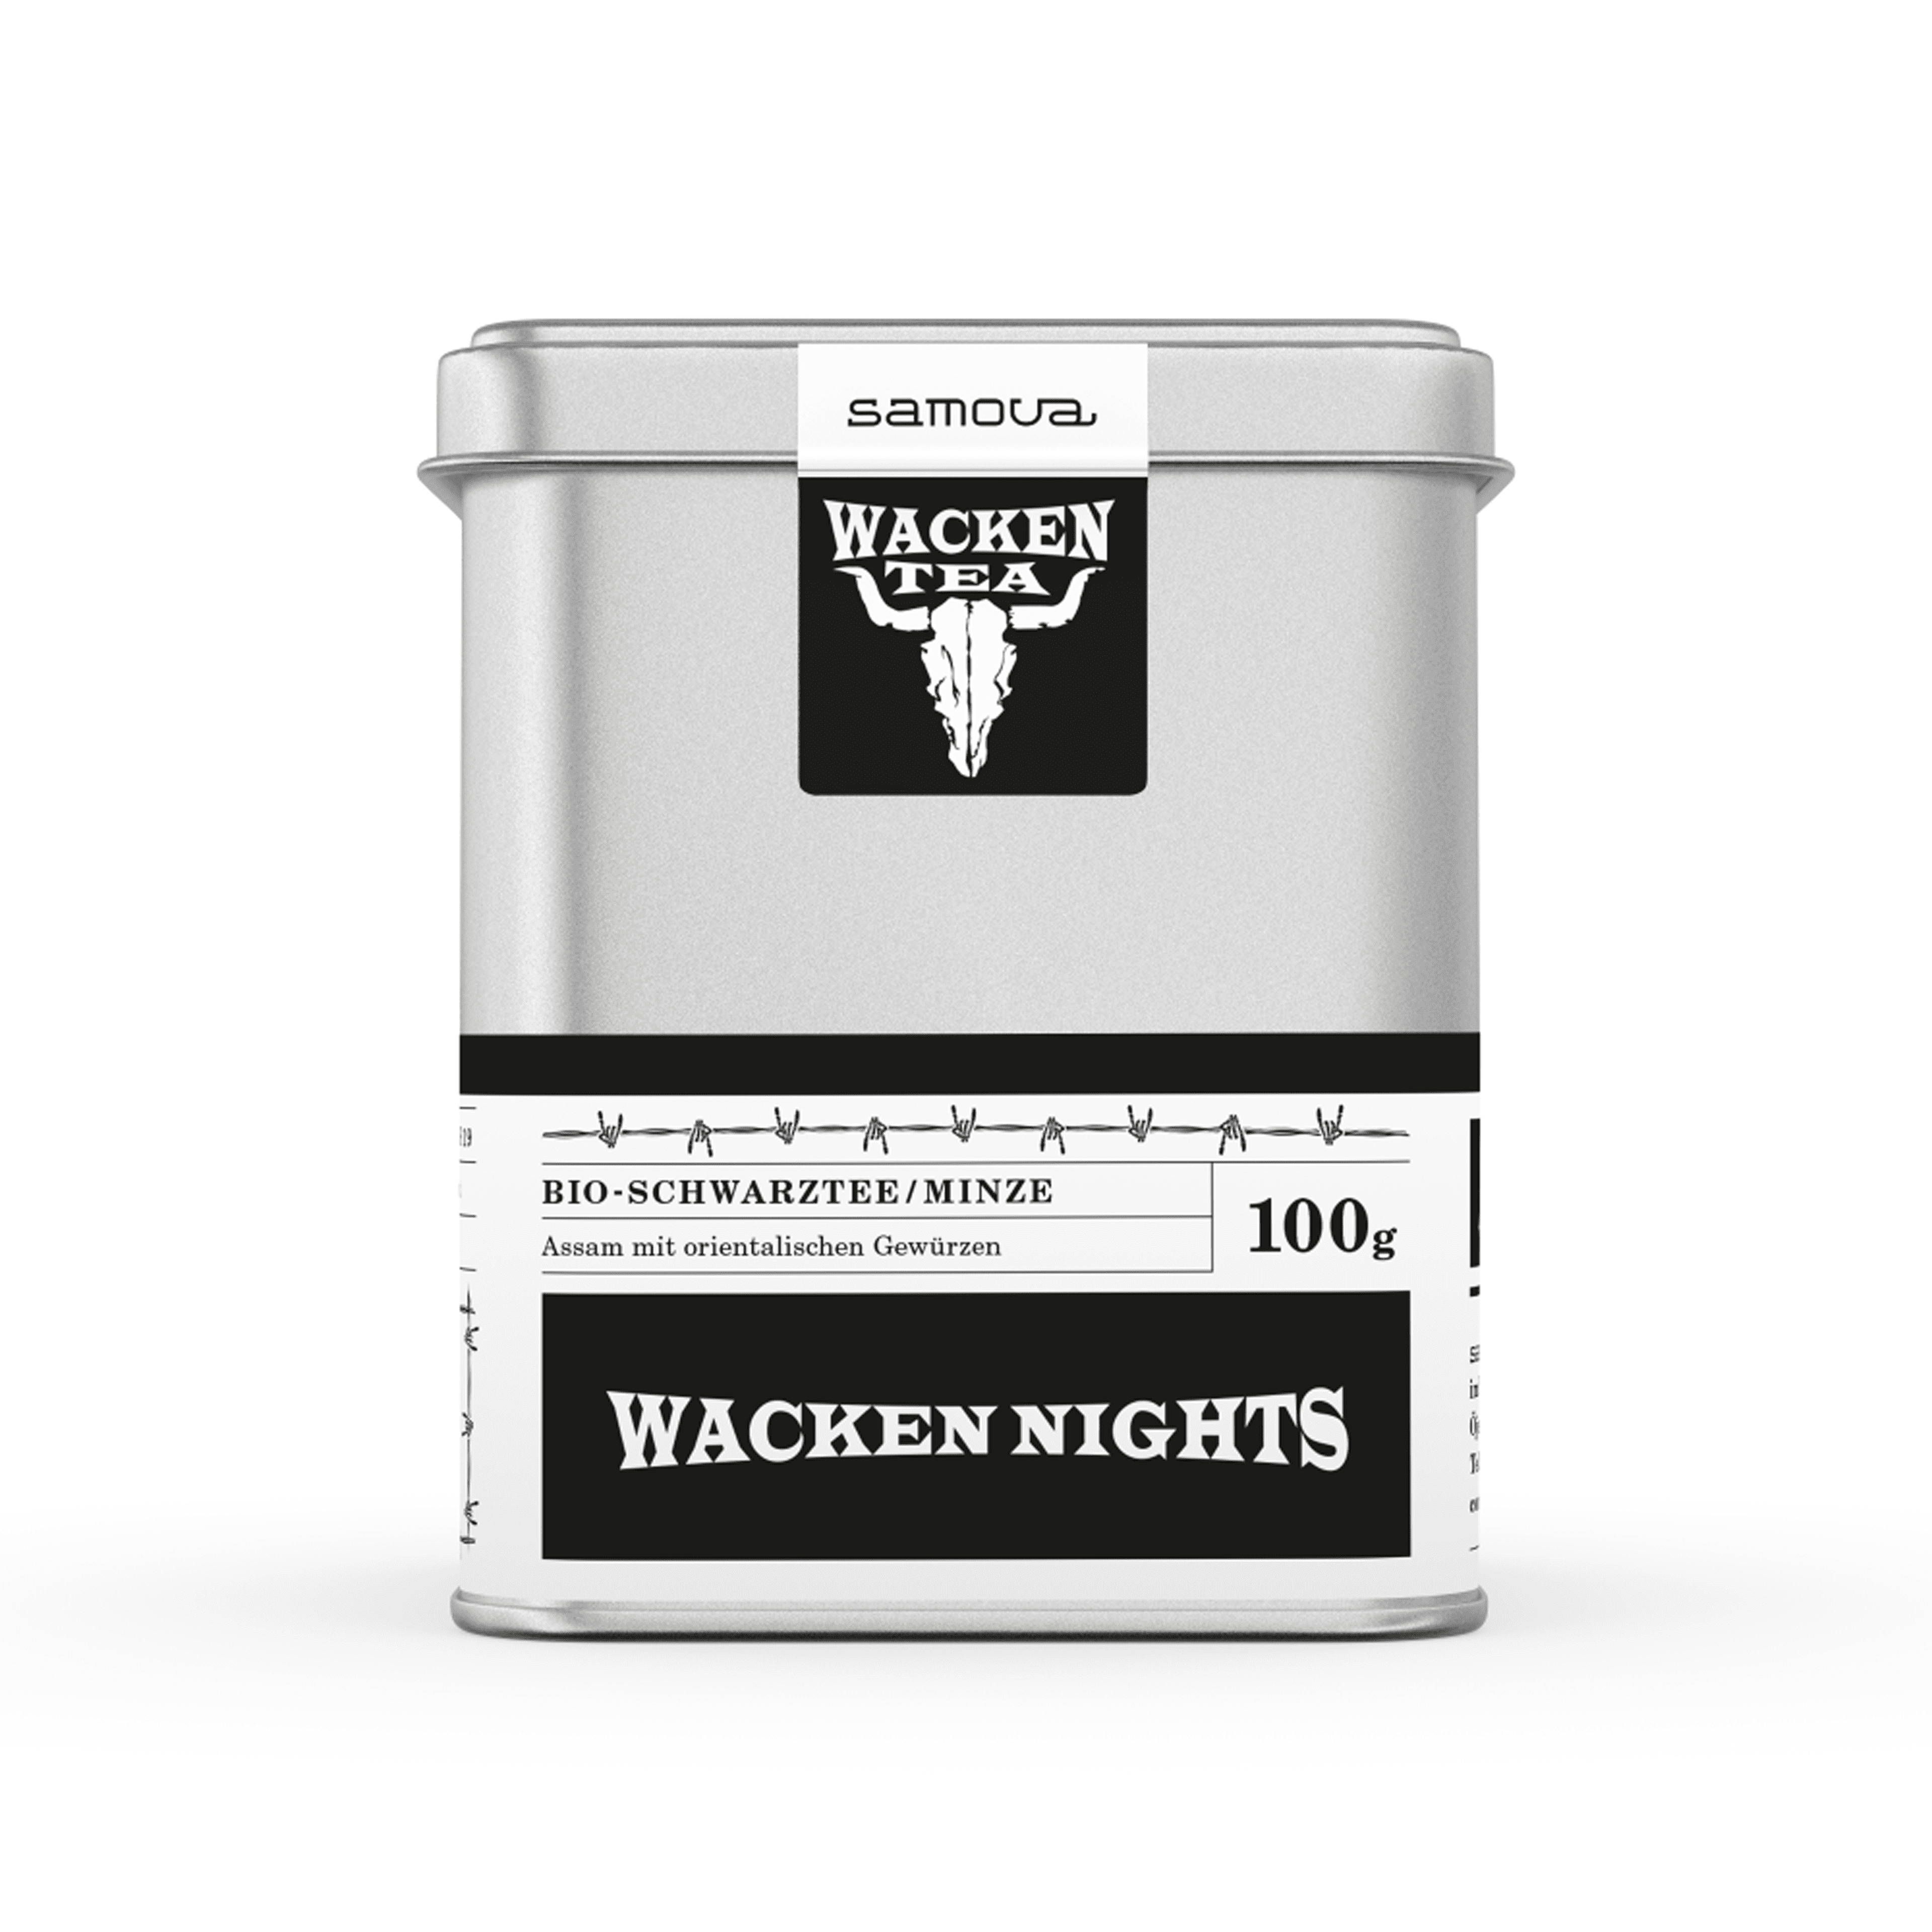 Can of Wacken Nights tea